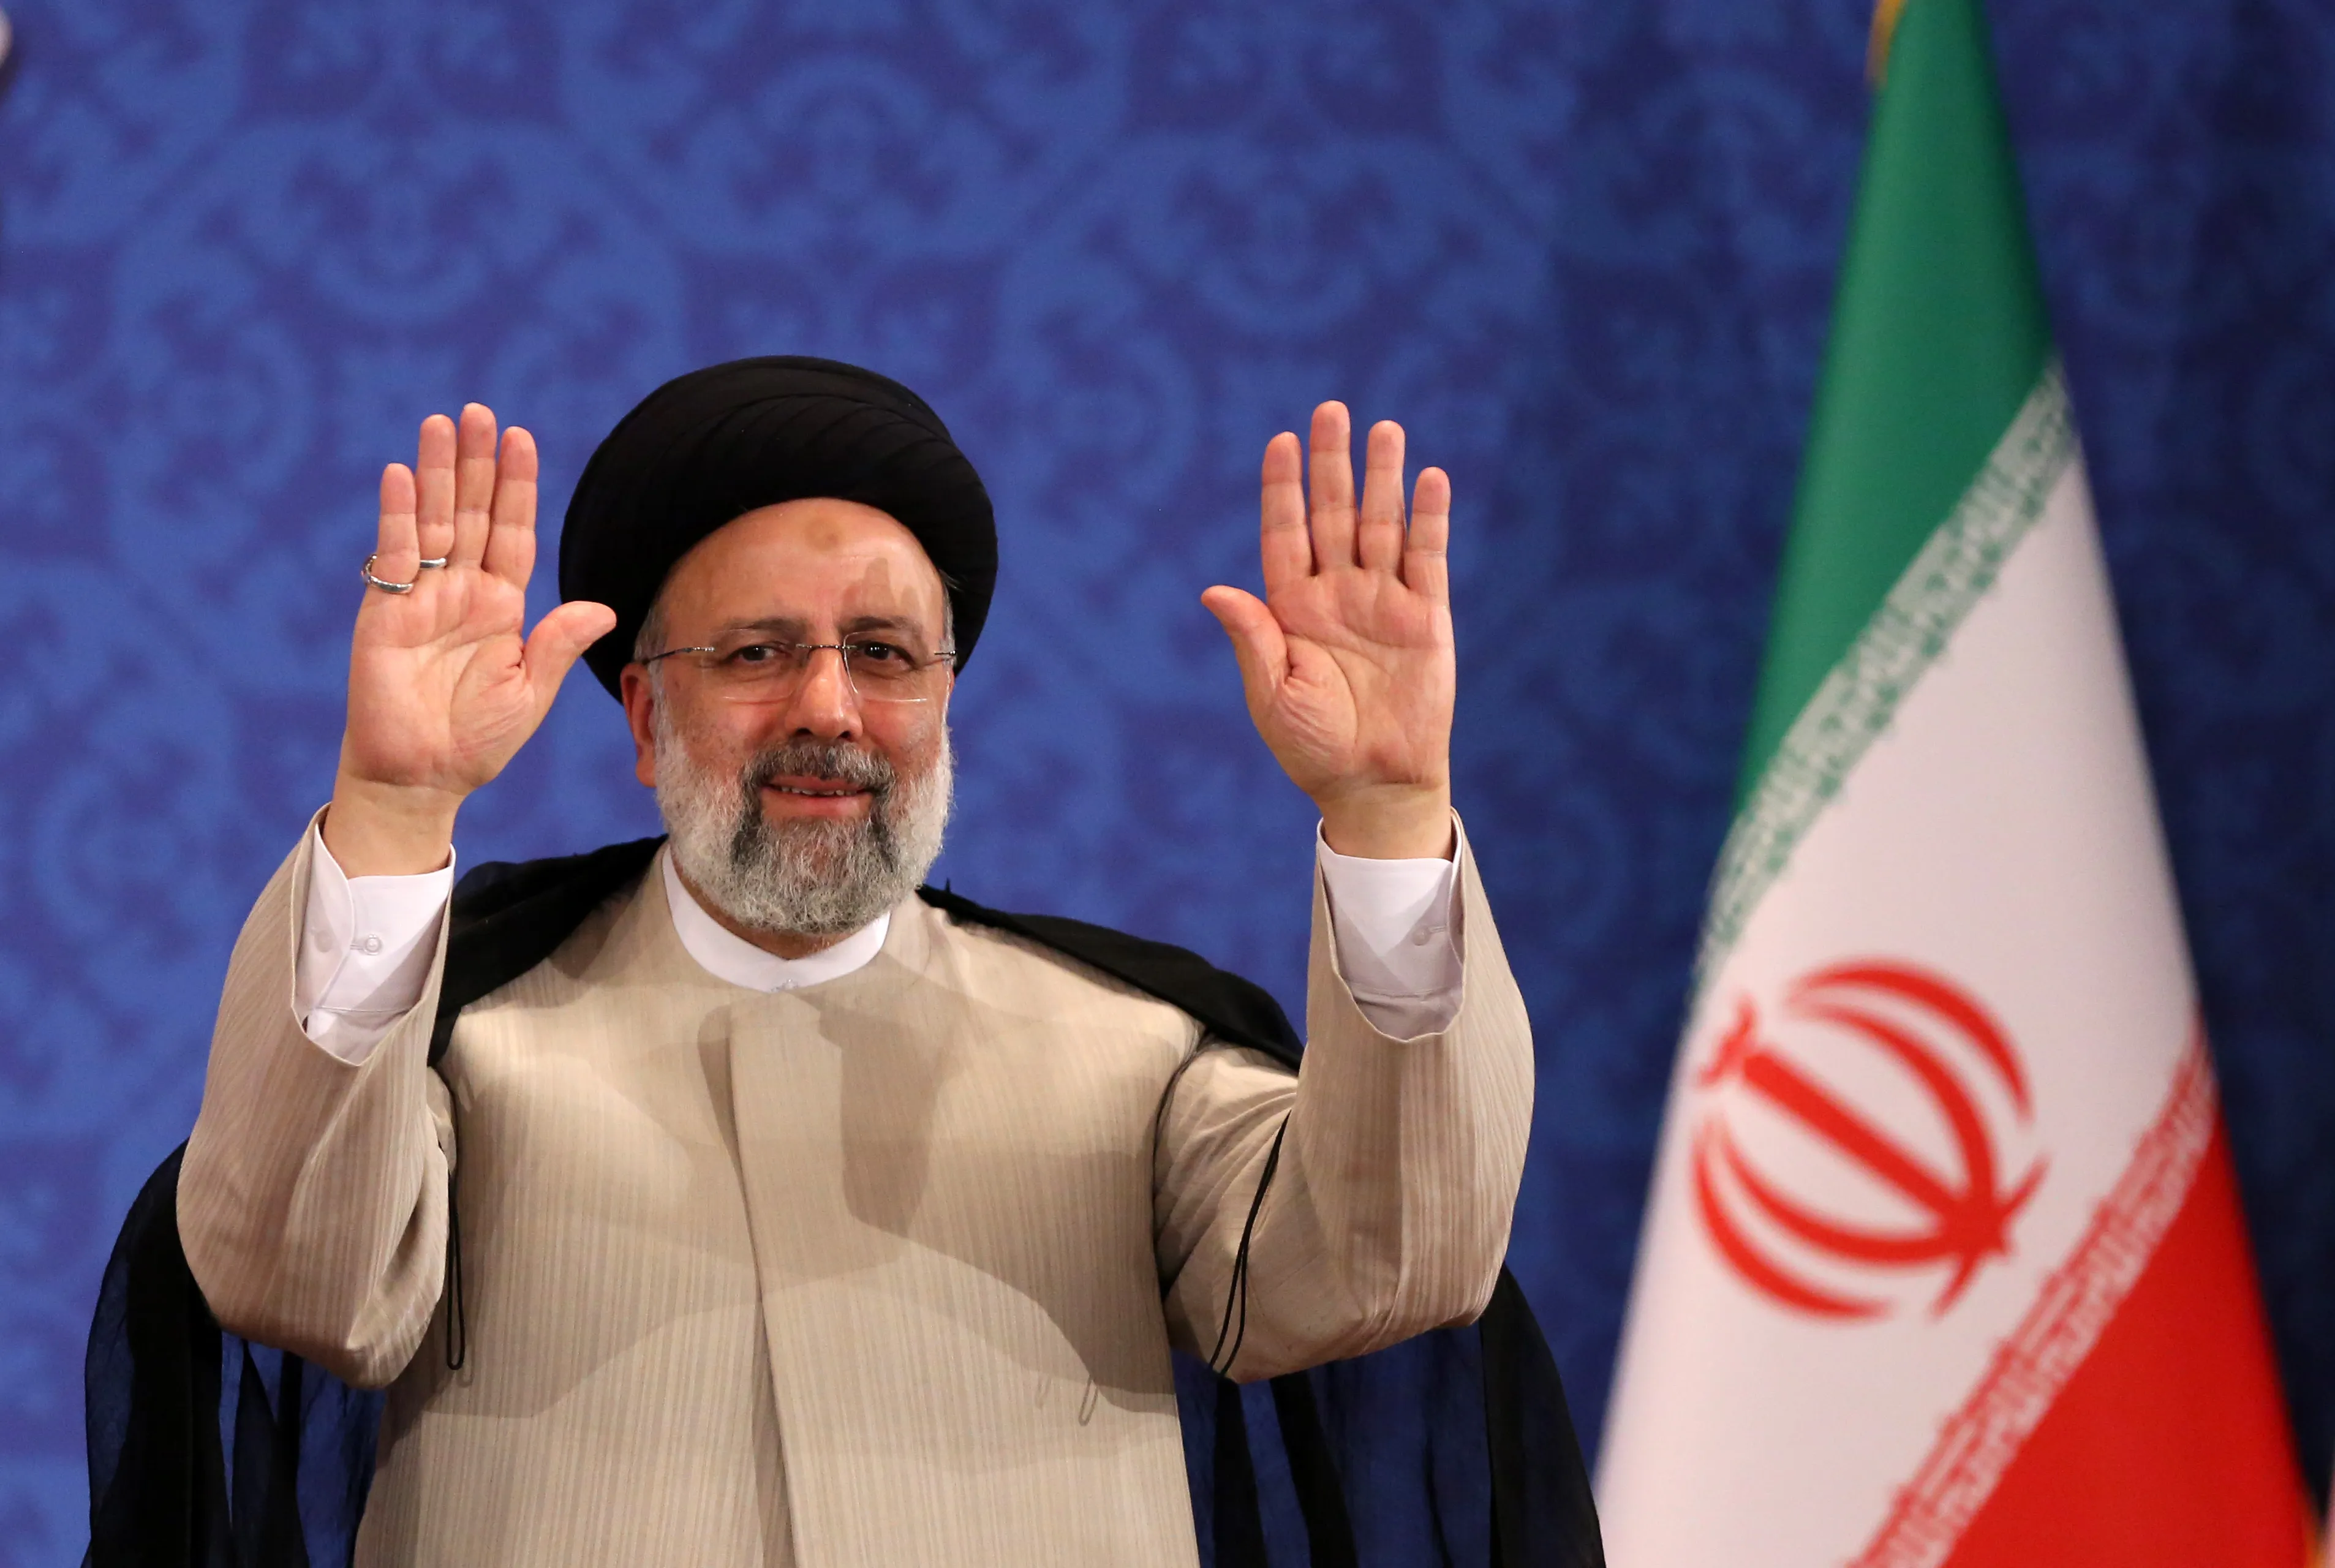 الرئيس الإيراني يرد على تهديدات واشنطن: لن نبدأ الحرب لكن سنرد بقوة 